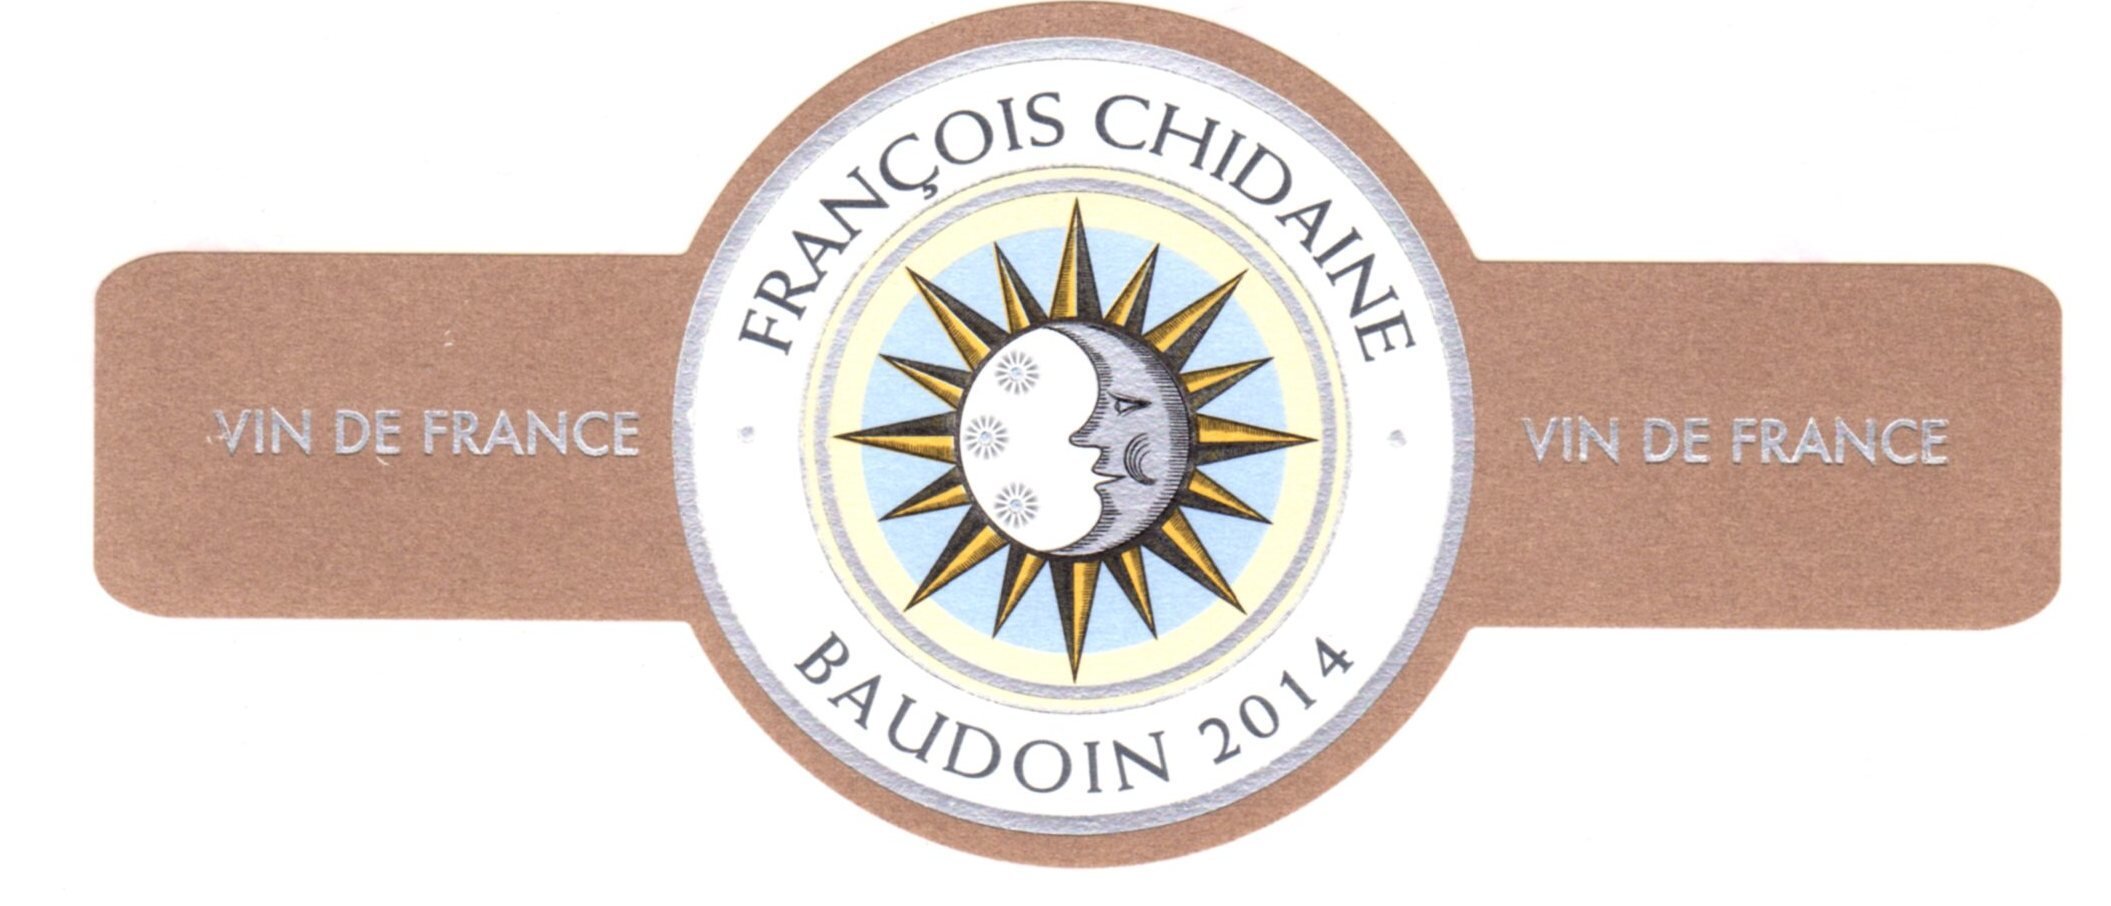 Francois Chidaine